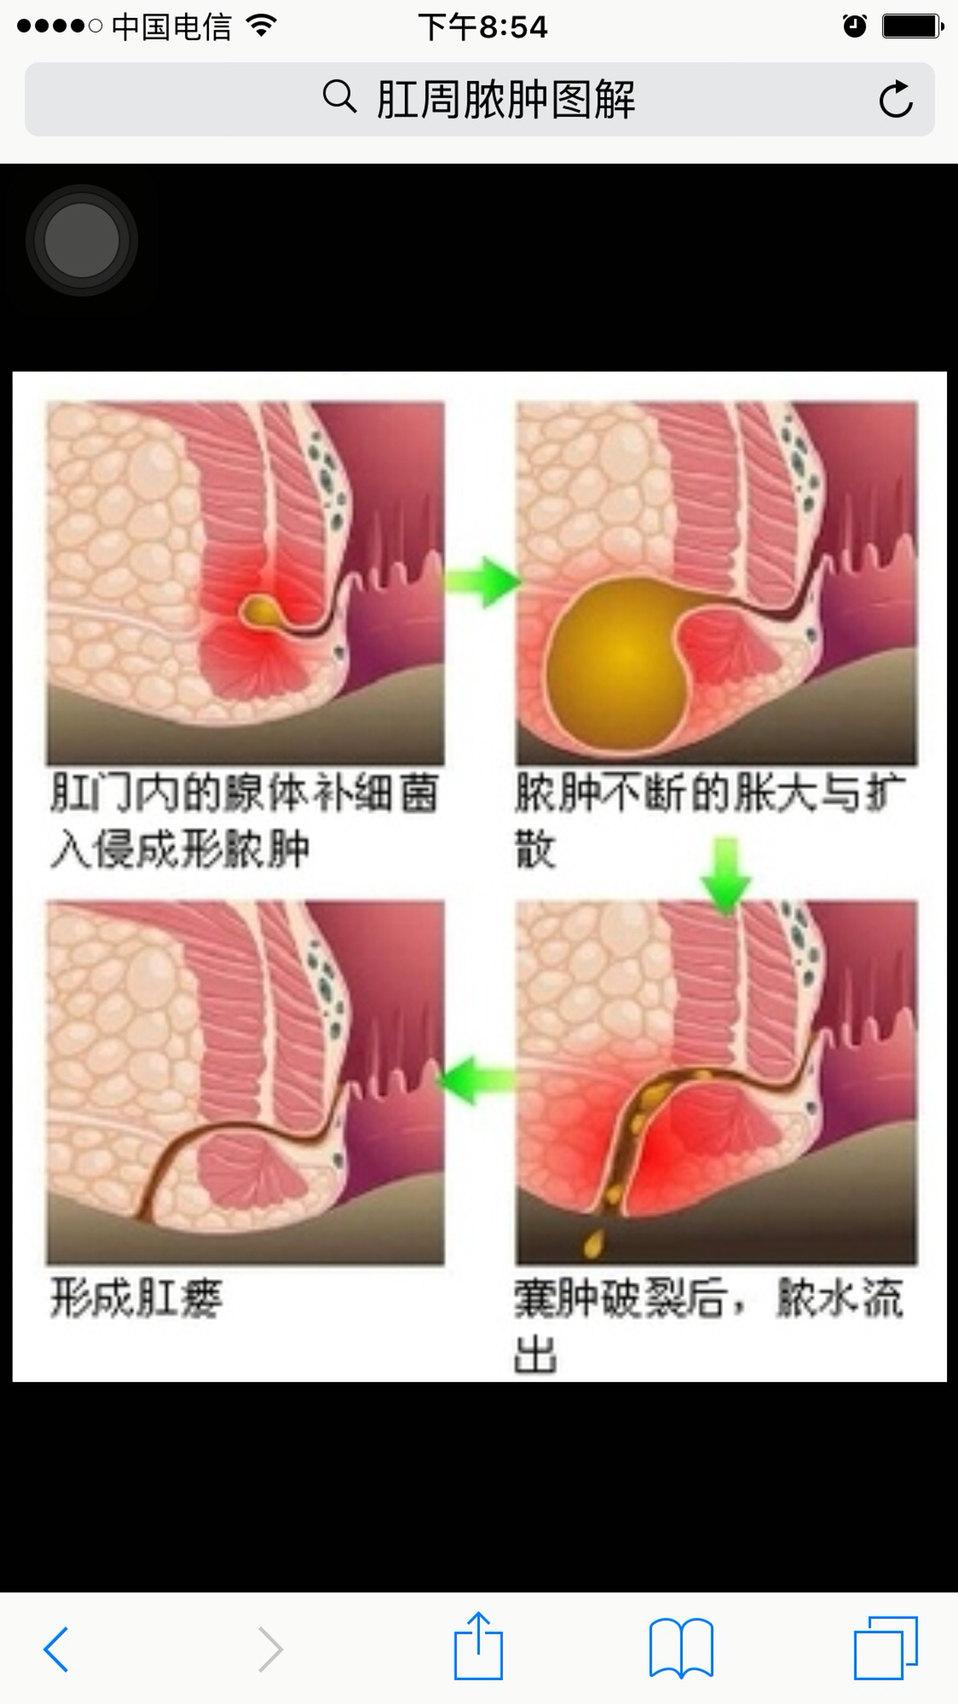 肛瘘是肛门直肠瘘的简称,是发生在肛门直肠周围的脓肿溃破或切口引流